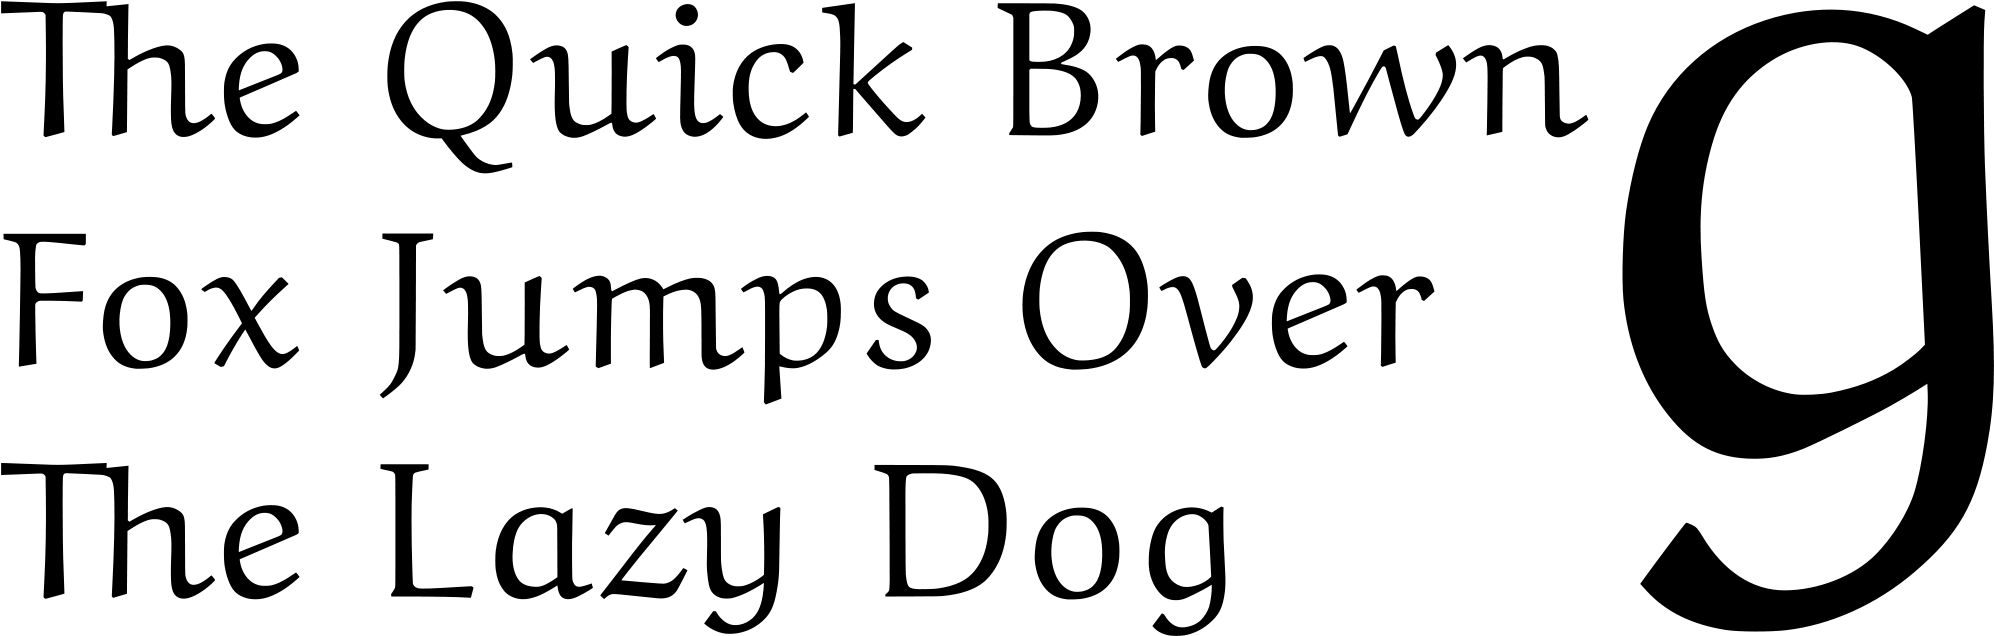 Pangram Sentence Example PNG image